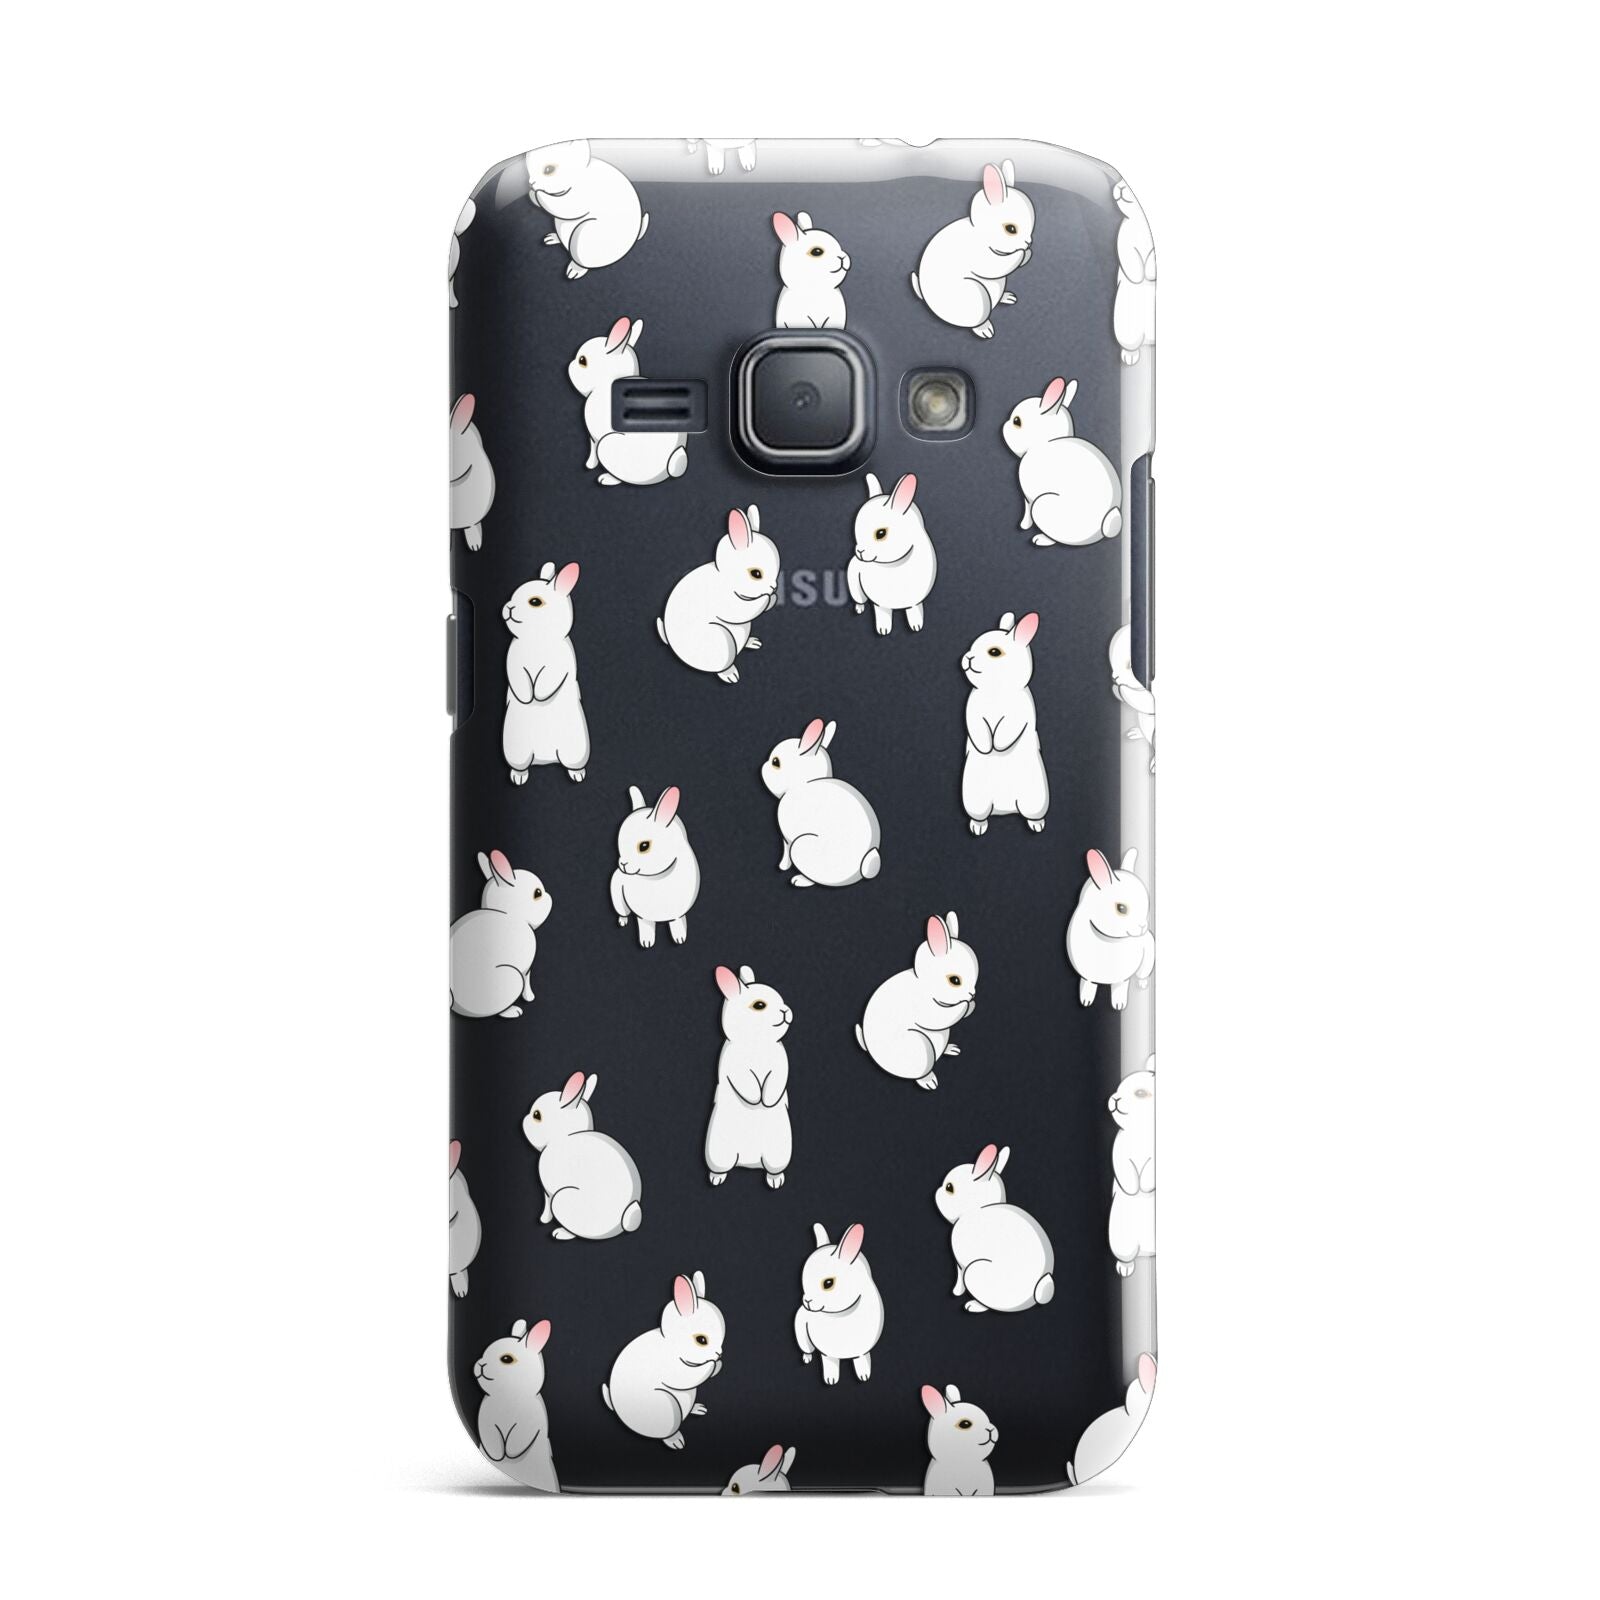 Bunny Rabbit Samsung Galaxy J1 2016 Case